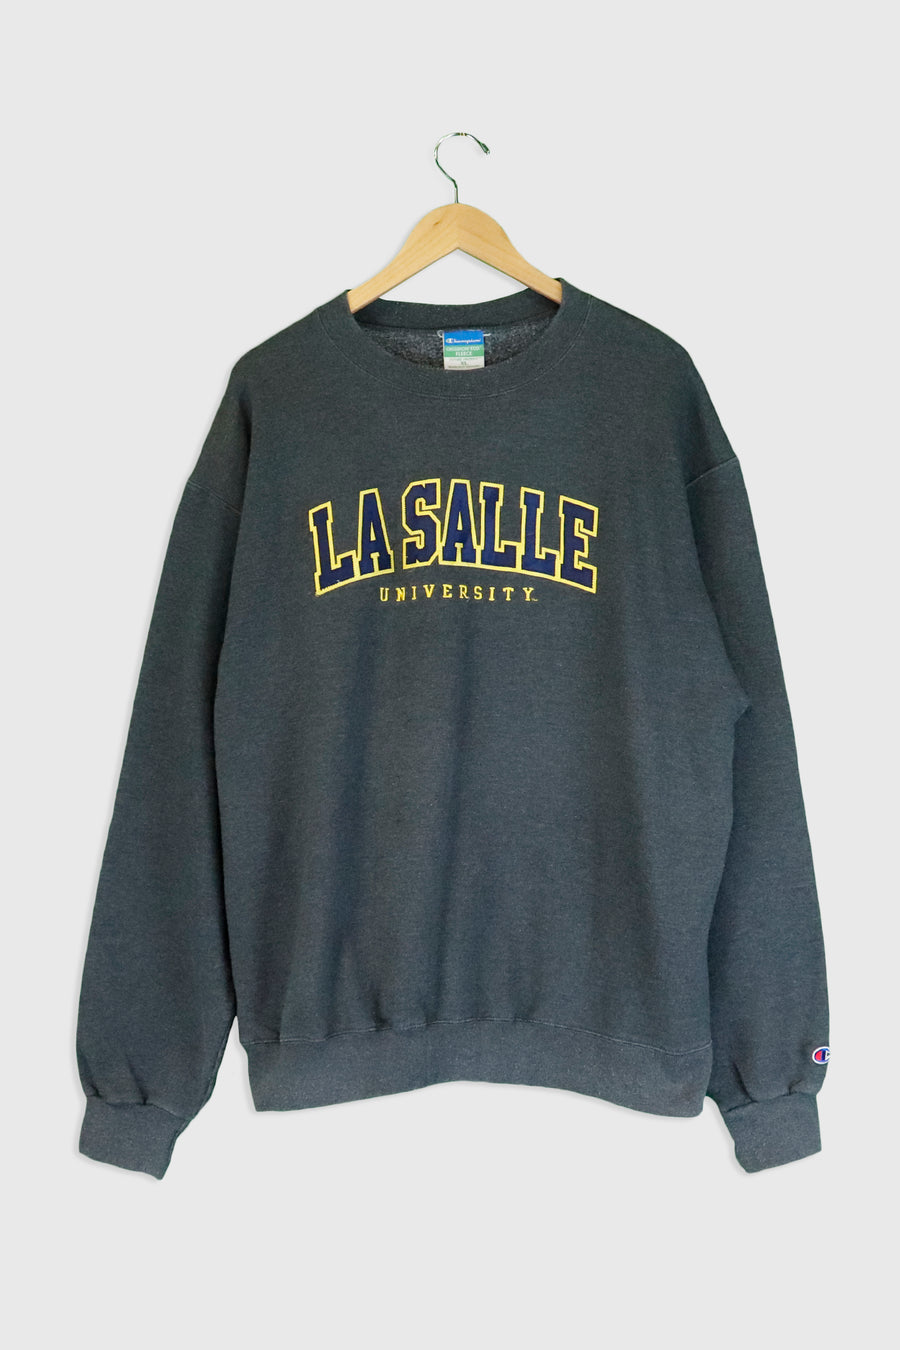 Vintage Champion La Salle University Patched Sweatshirt Sz XL